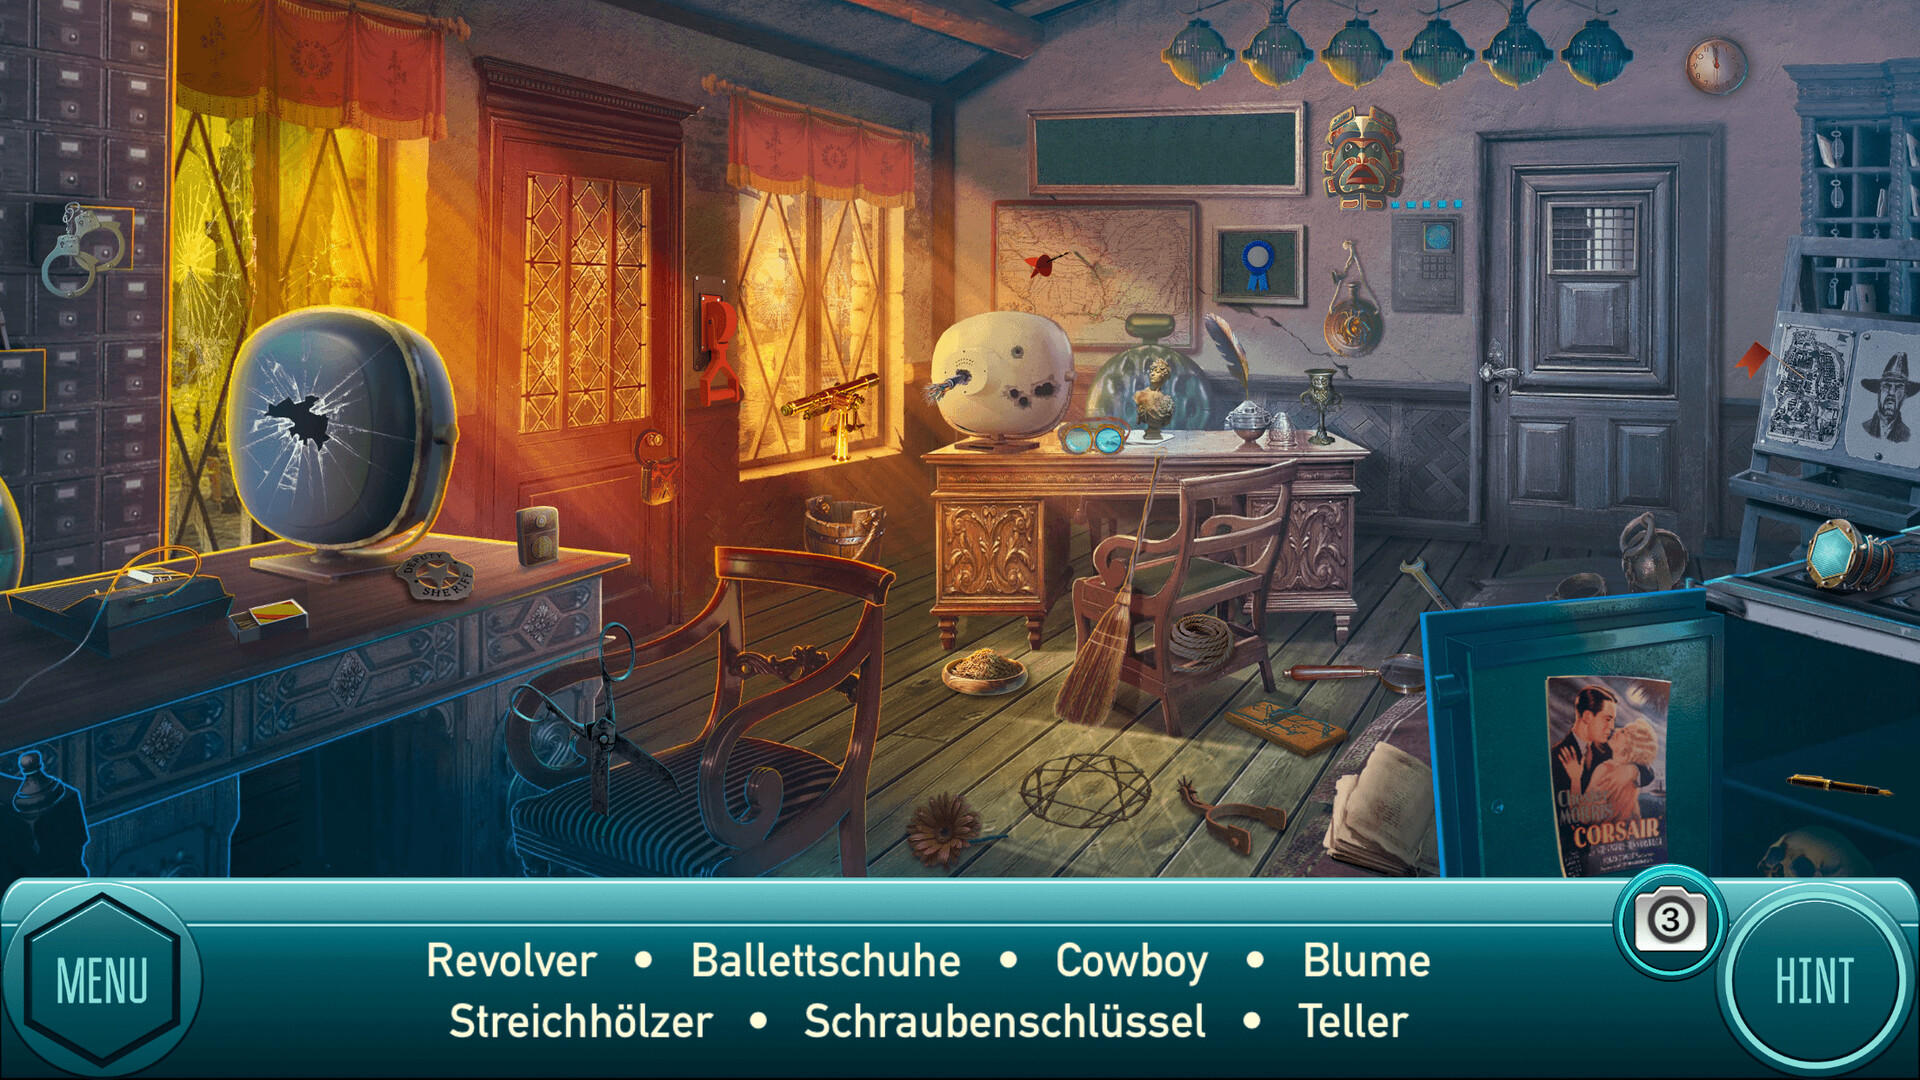 Wild West - Wimmelbild Abenteuer Spiele auf Deutsch screenshot game